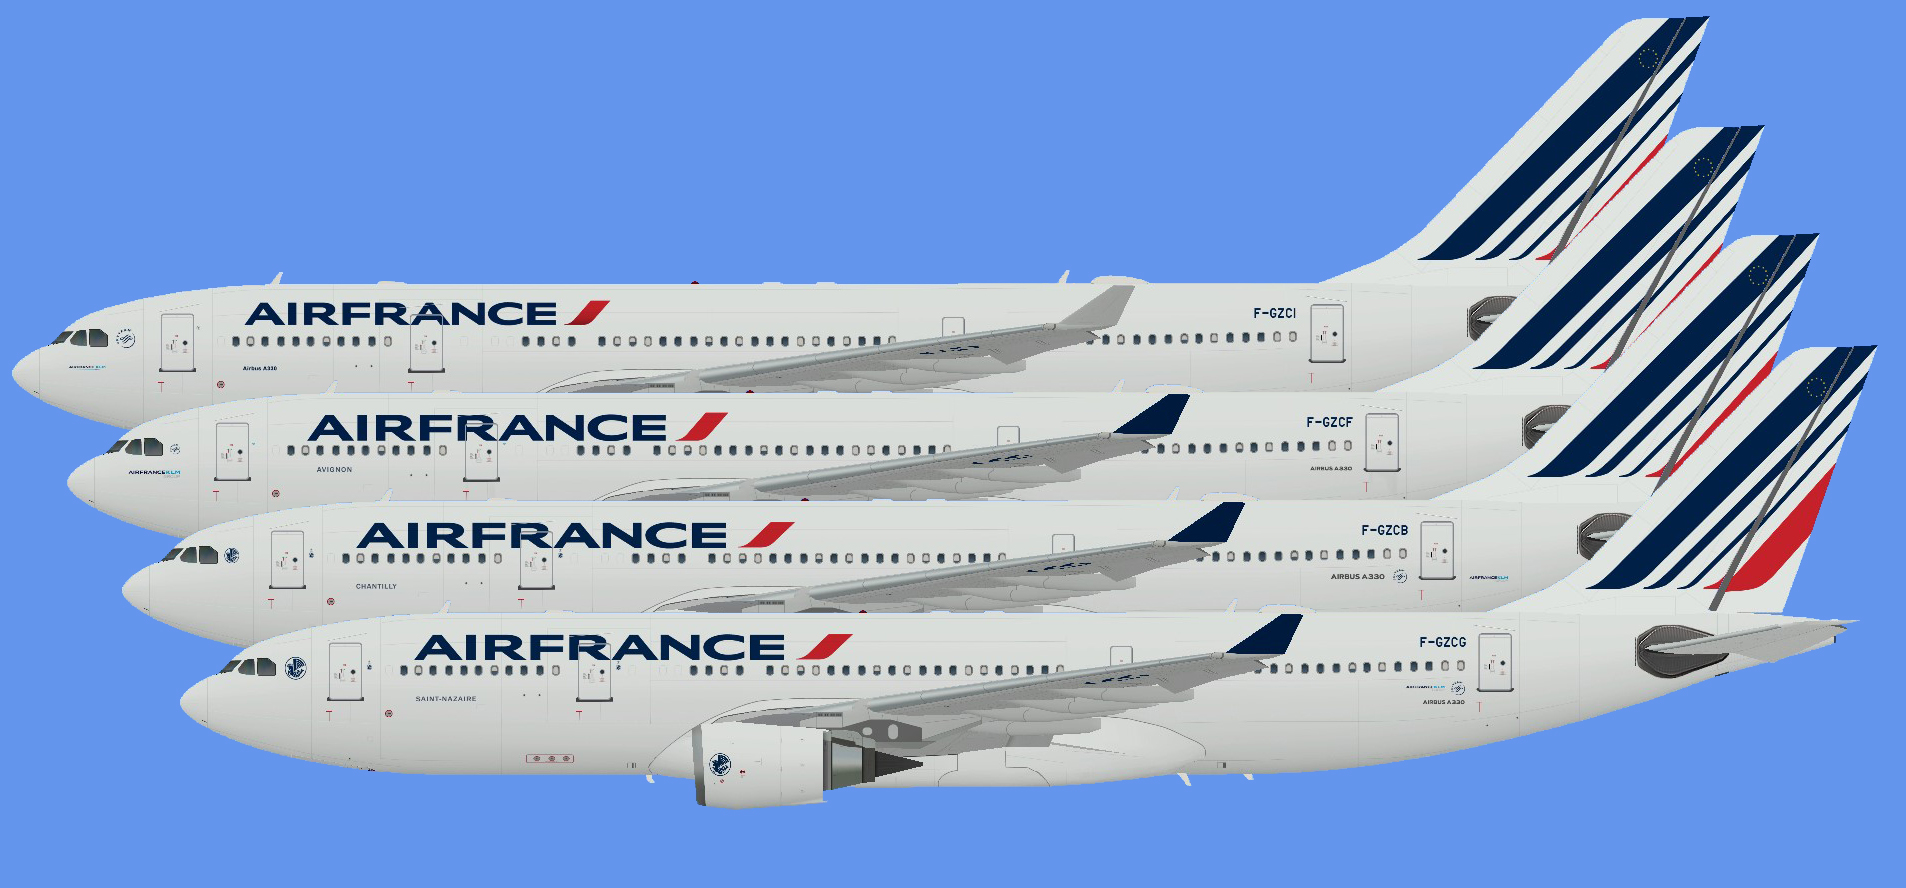 Air France Airbus A330 (AIG)